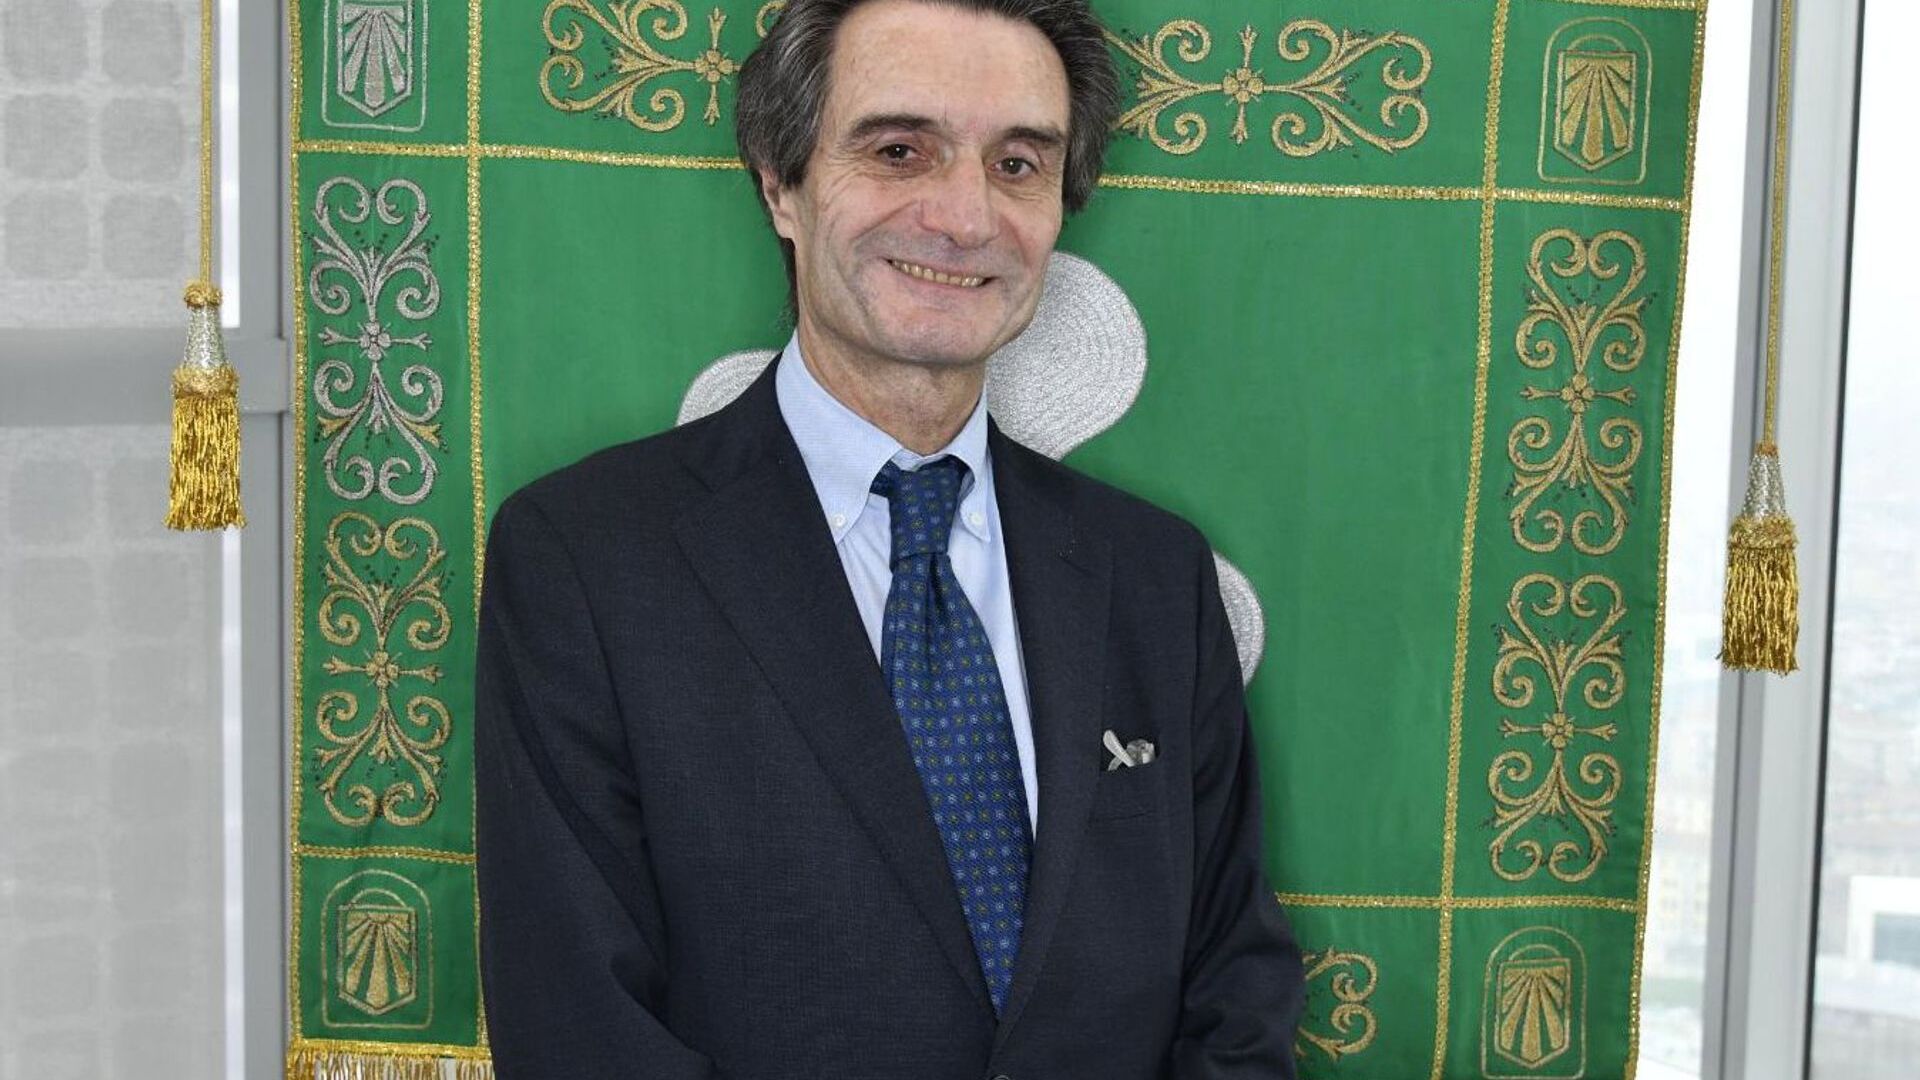 Attilio Fontana เป็นประธานของภูมิภาค Lombardy